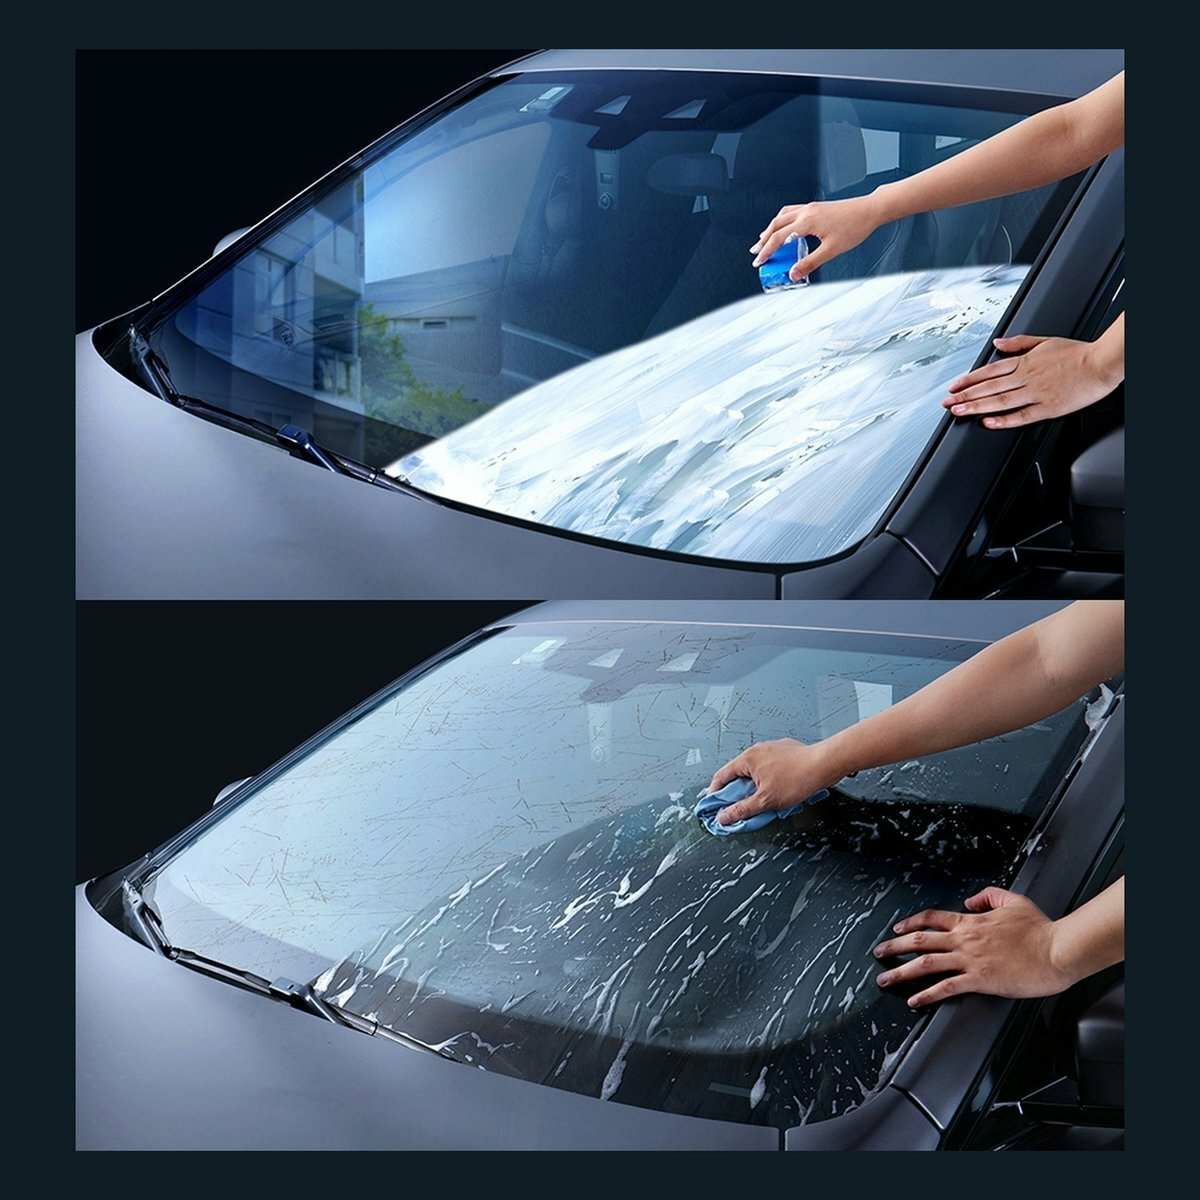 Kép 9/23 - Baseus autós kiegészítő, Auto-care ablak tisztító folyadék, zsíros foltok eltávolítására, 200ml, fehér (CRYH020002)